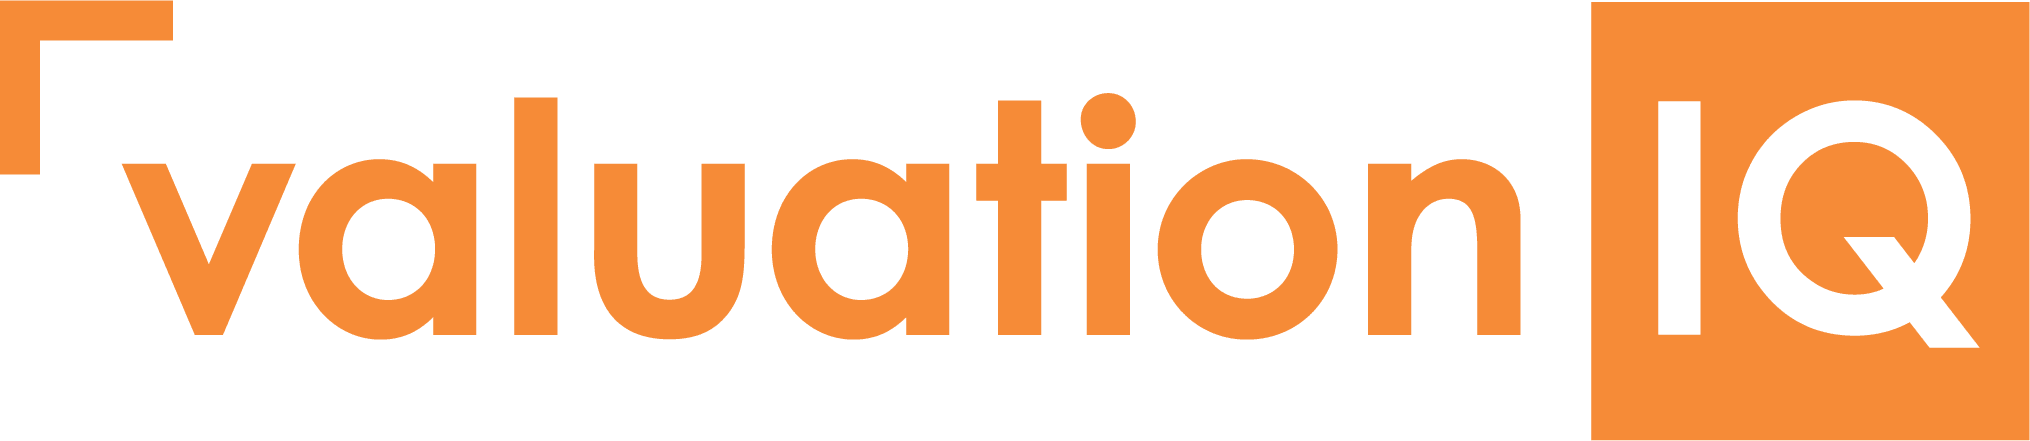 Valuation Logo Orange